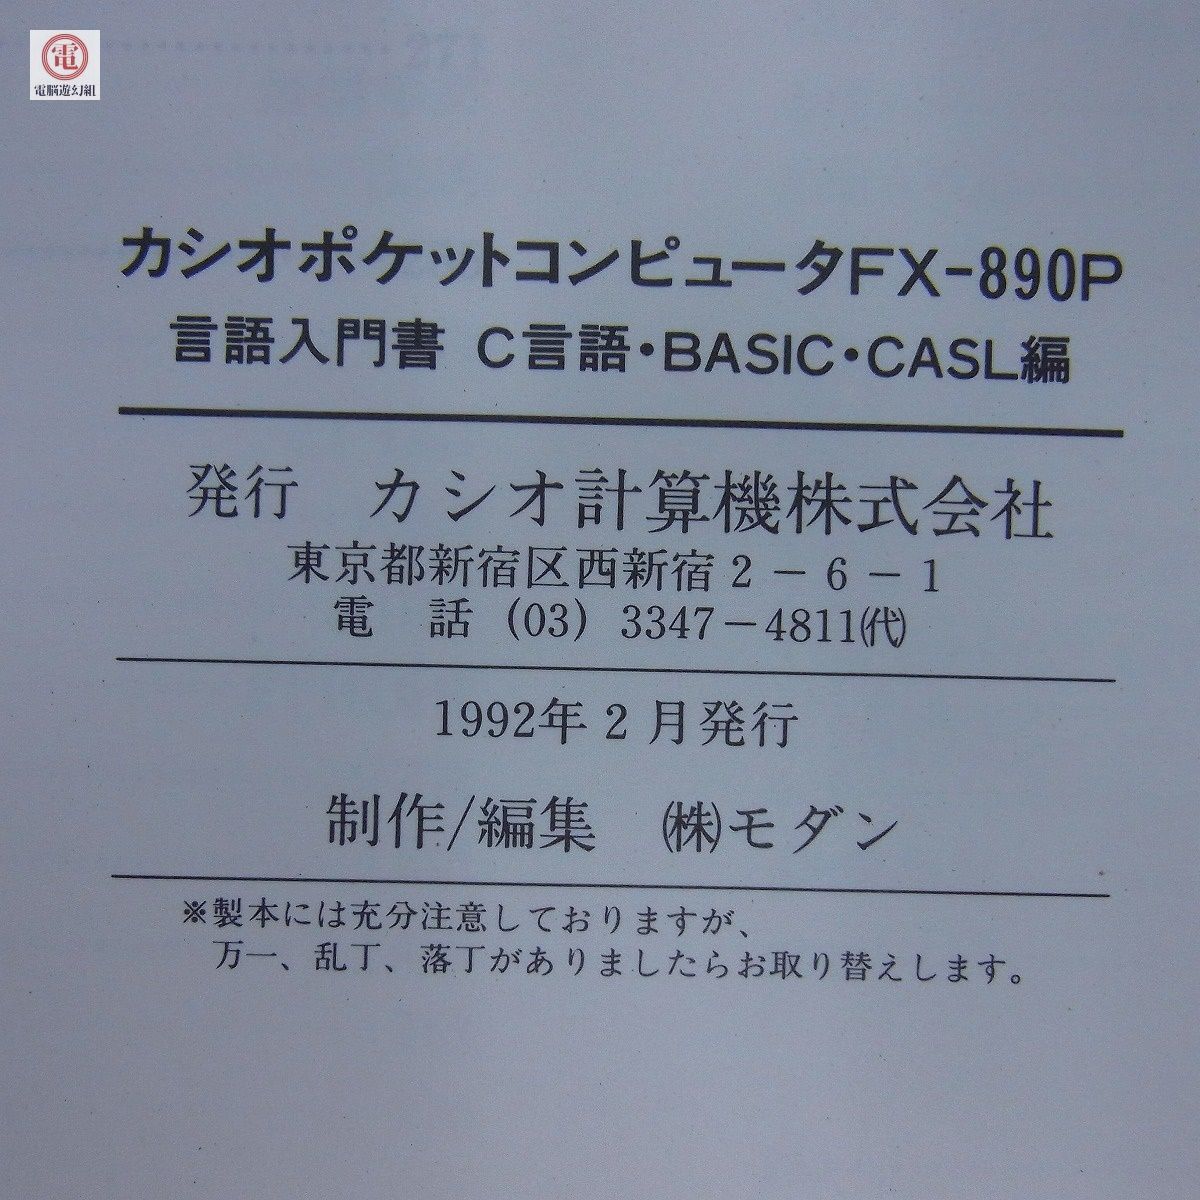 ポケコン FX-890P 言語入門書 C言語・BASIC・CASL編 CASIO ポケットコンピュータ ※本のみ【10_画像7